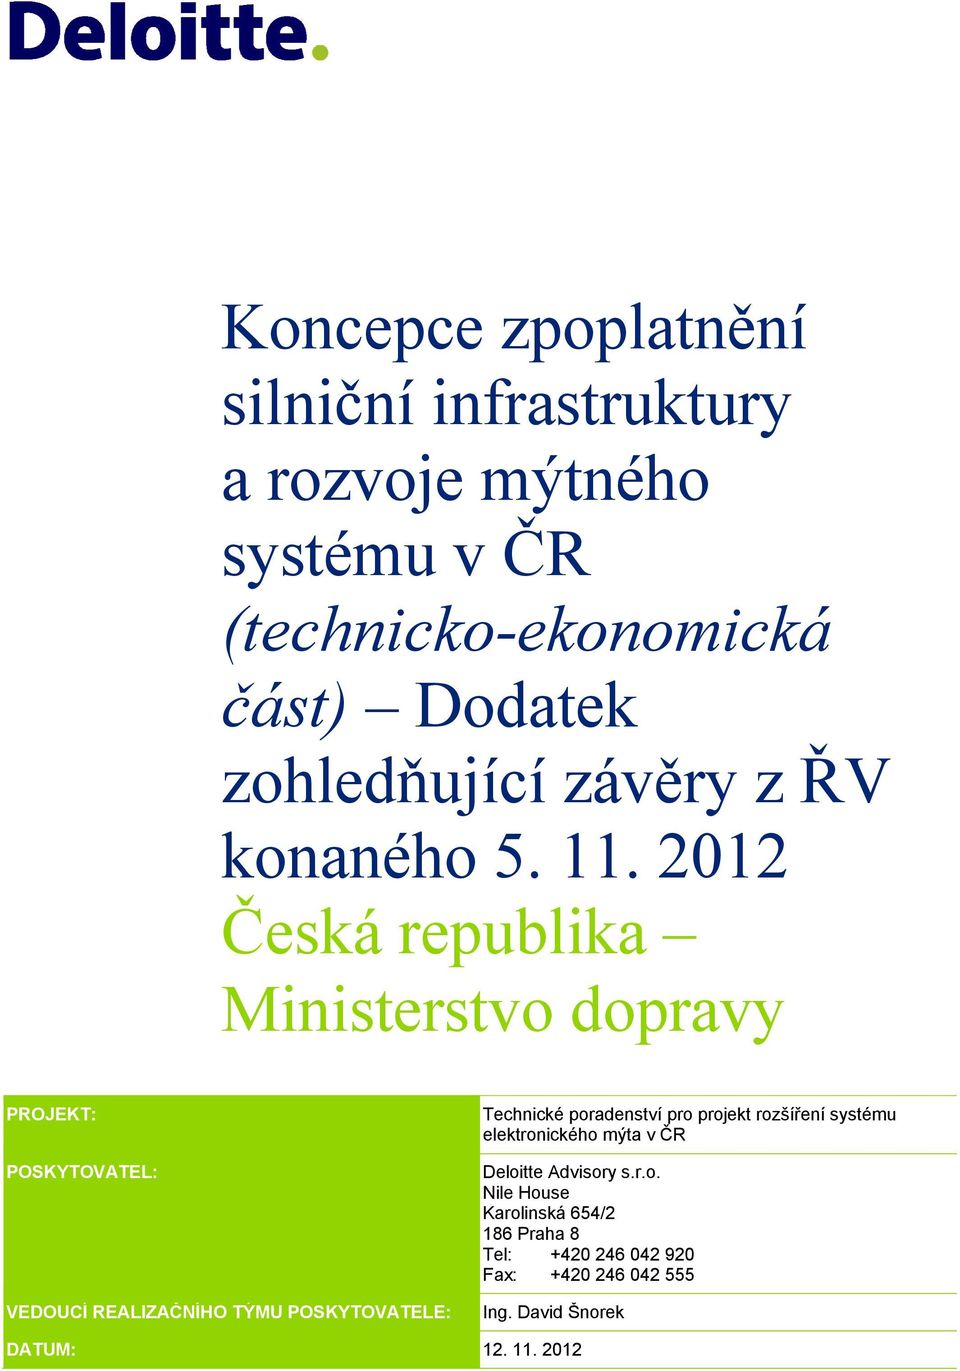 212 Česká republika Ministerstvo dopravy PROJEKT: Technické poradenství pro projekt rozšíření systému elektronického